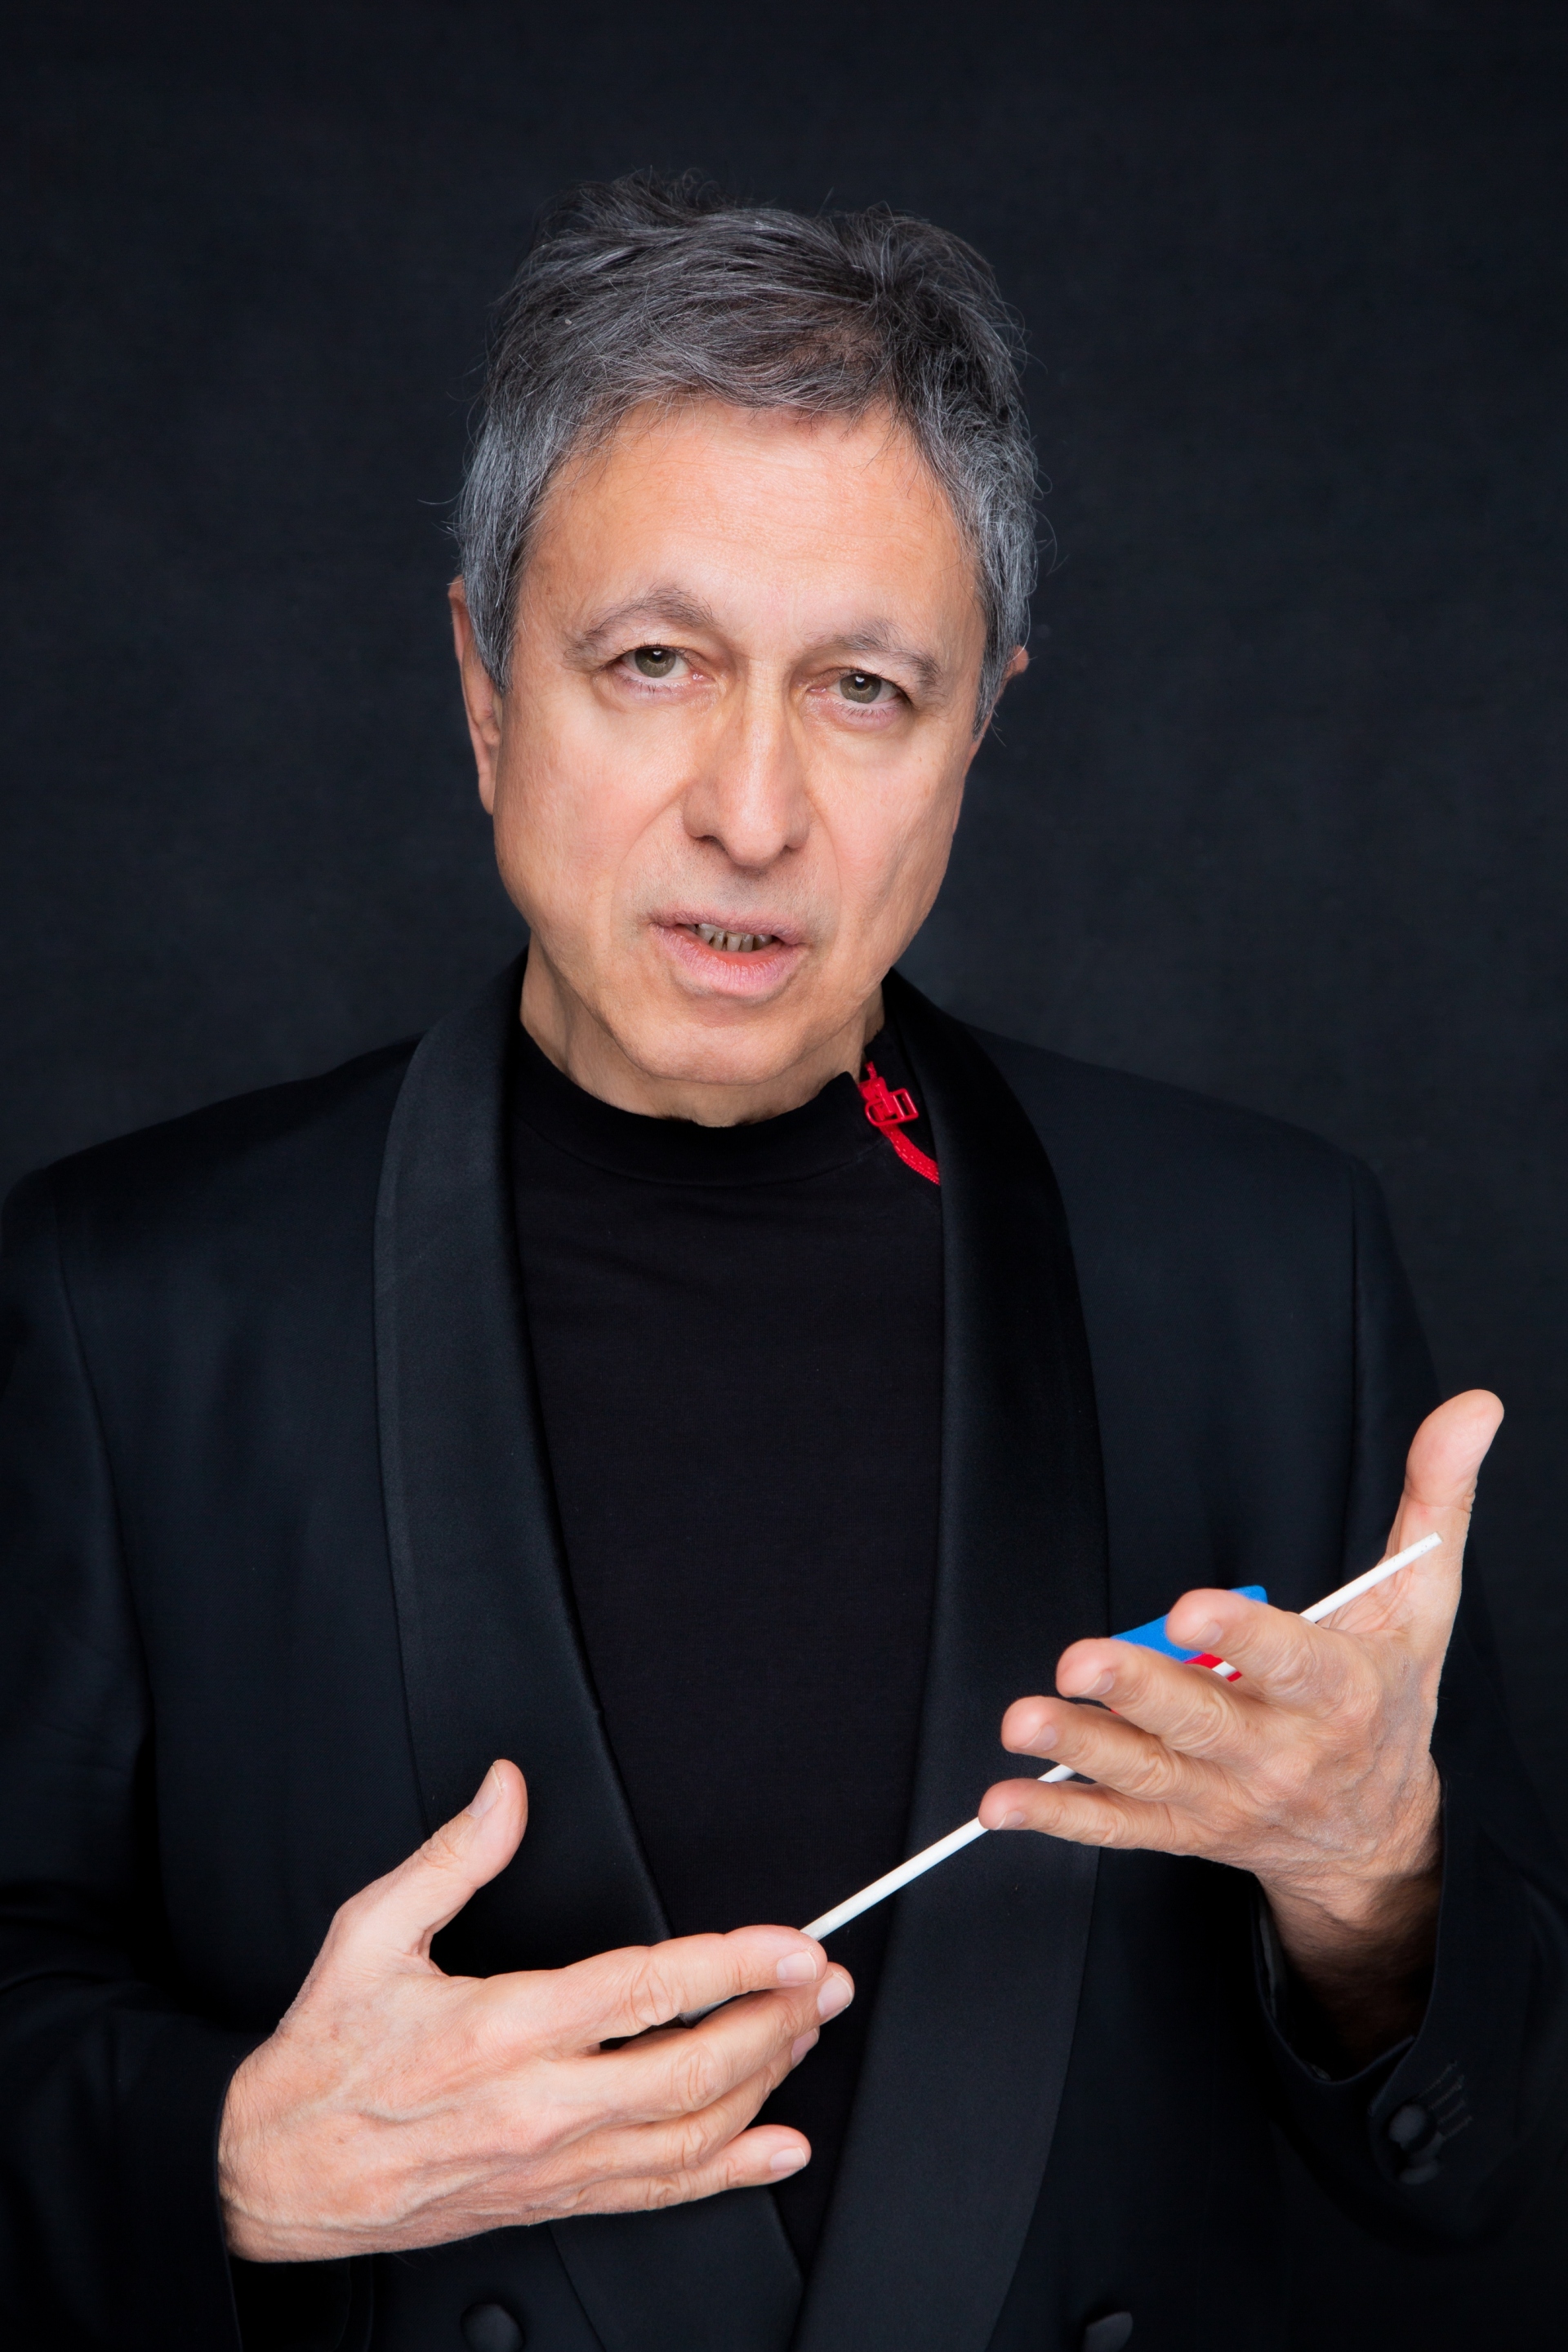 Λουκάς Καρυτινός: Συνέντευξη με τον καλλιτεχνικό διευθυντή της Κρατικής Ορχήστρας Αθηνών και διακεκριμένο μαέστρο.